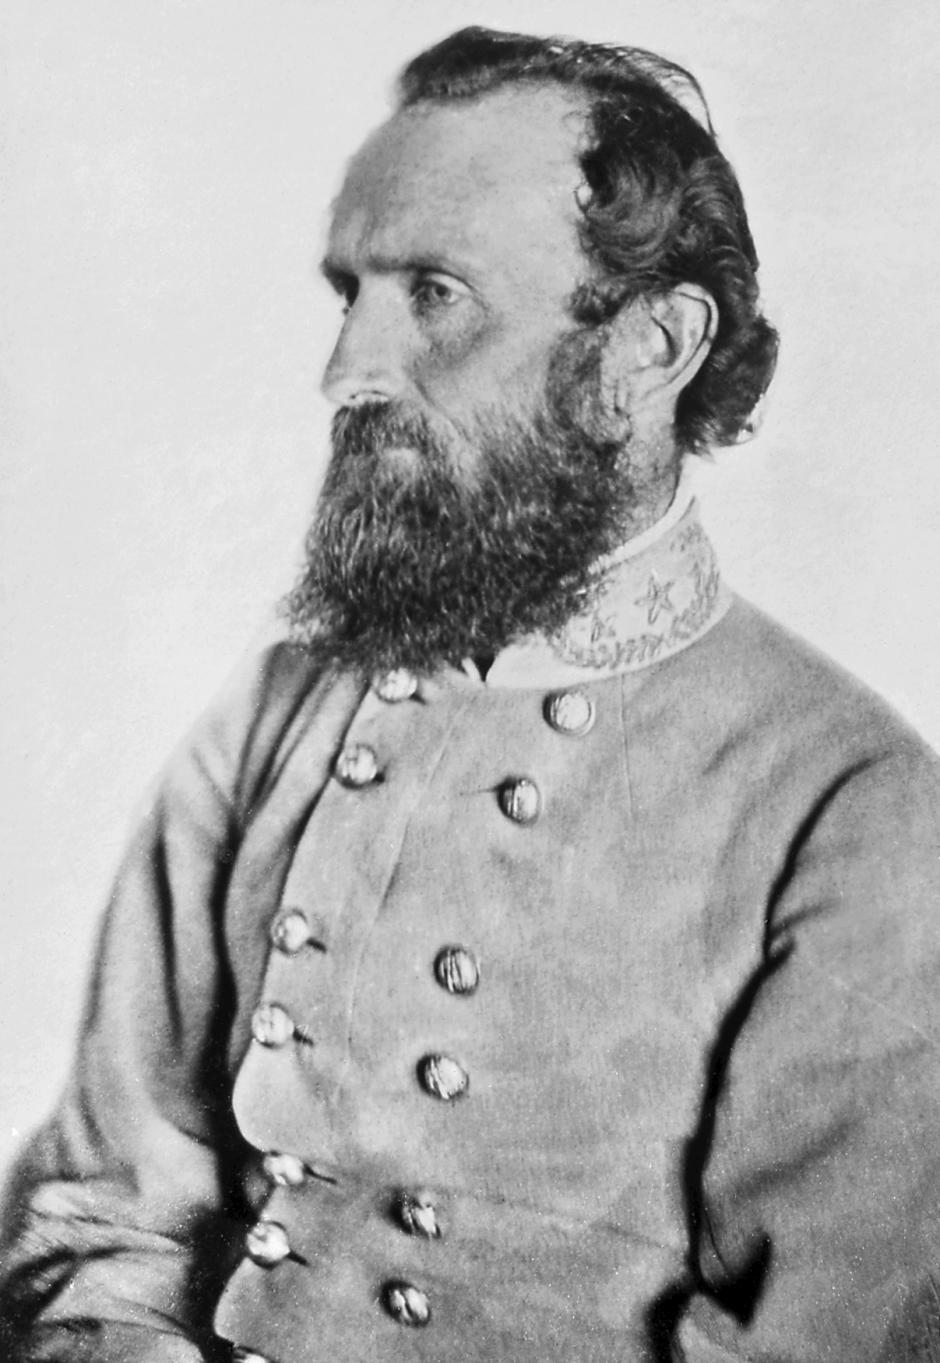 Retrato del general Jackson en "Chancellorsville", tomado en una granja del condado de Spotsylvania el 26 de abril de 1863, siete días antes de ser herido en la batalla de Chancellorsville.